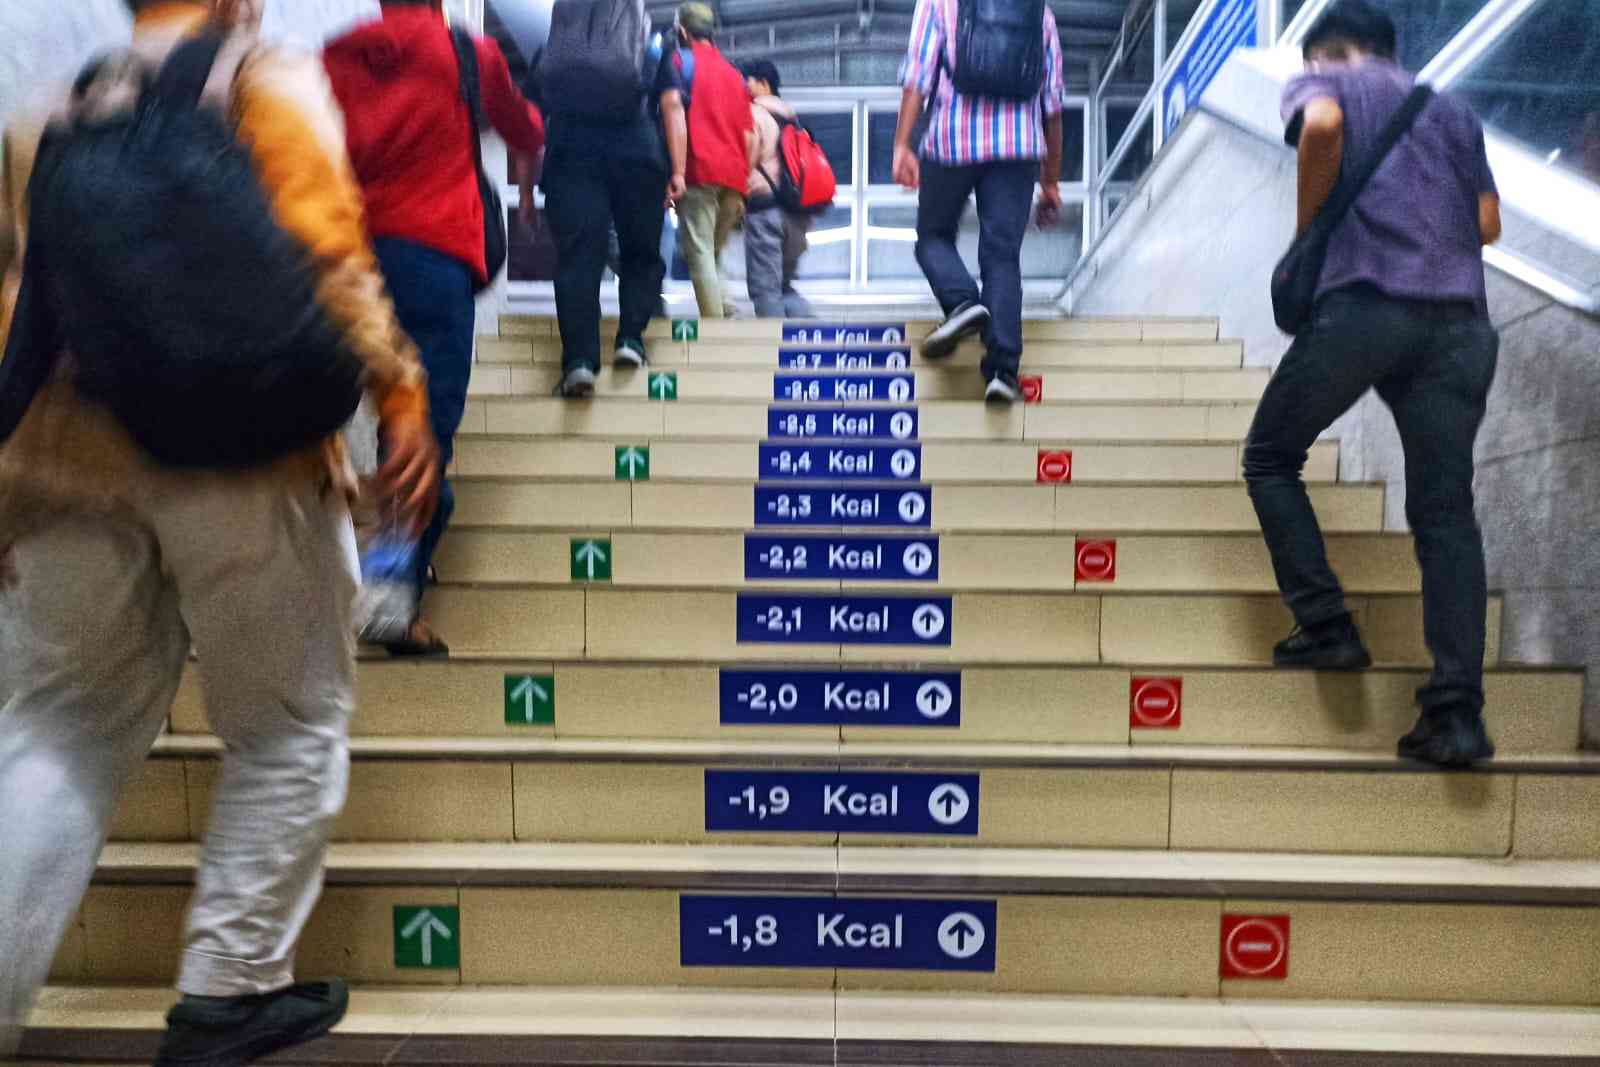 Naik turun tangga di stasiun (foto by widikurniawan)